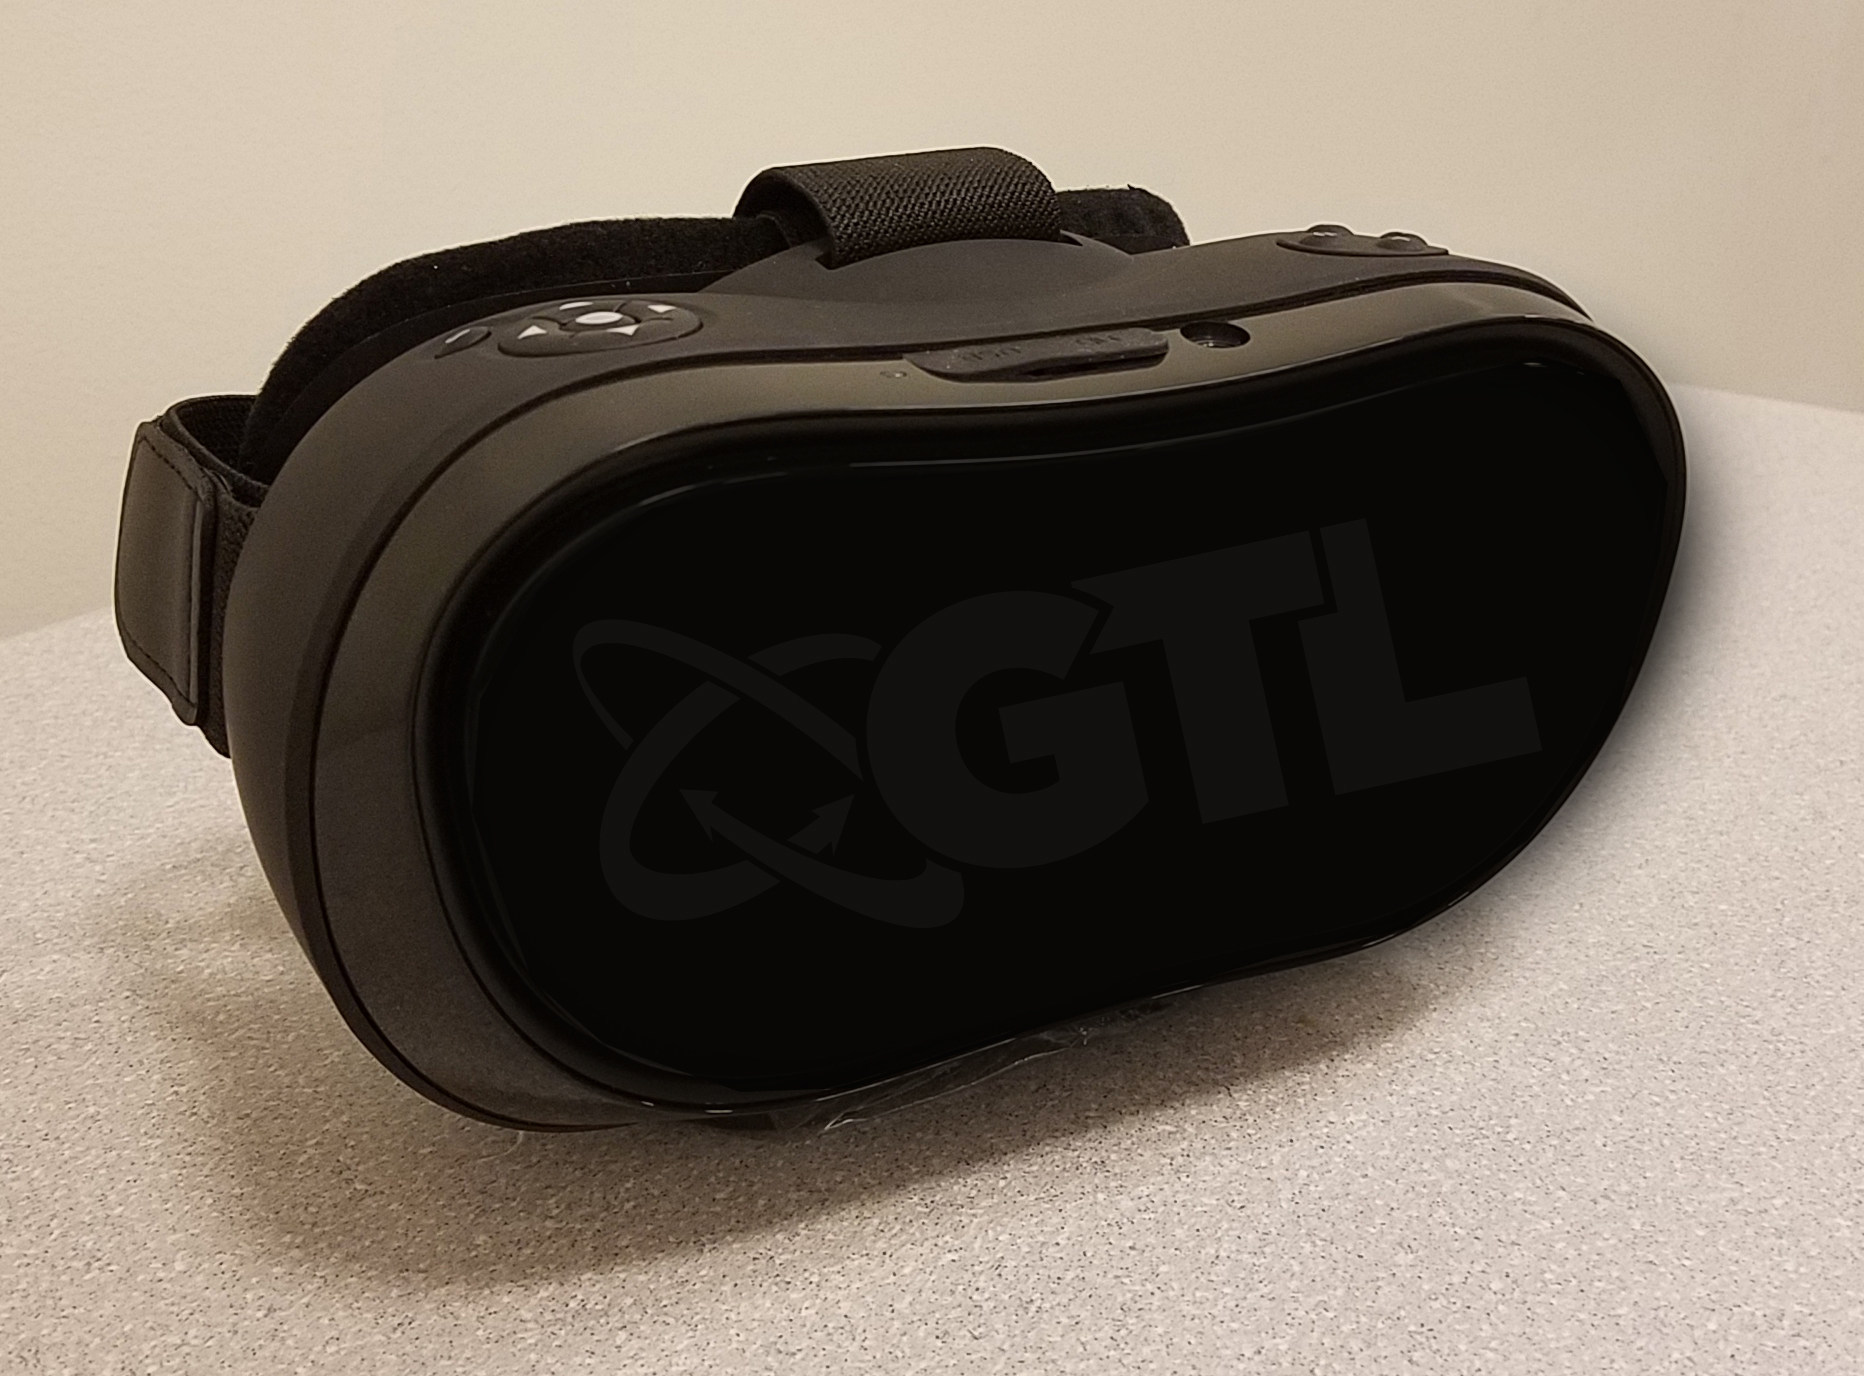 GTL PRISON VR